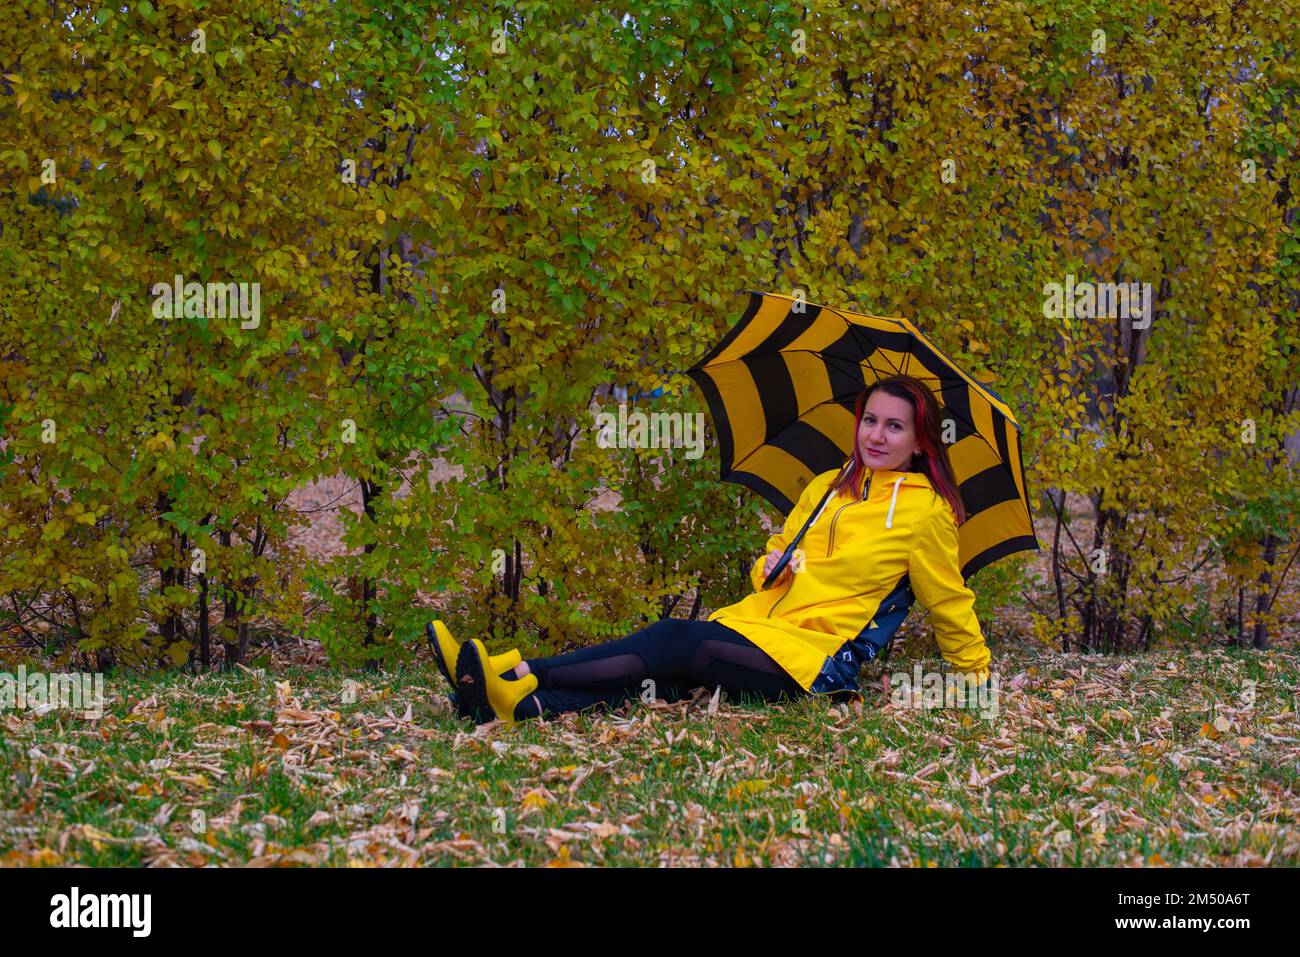 Una joven con chubasquero amarillo y paraguas se está divirtiendo mientras  camina por la ciudad en un ambiente tranquilo bajo la lluvia. Paseo,  lluvia, ciudad Fotografía de stock - Alamy